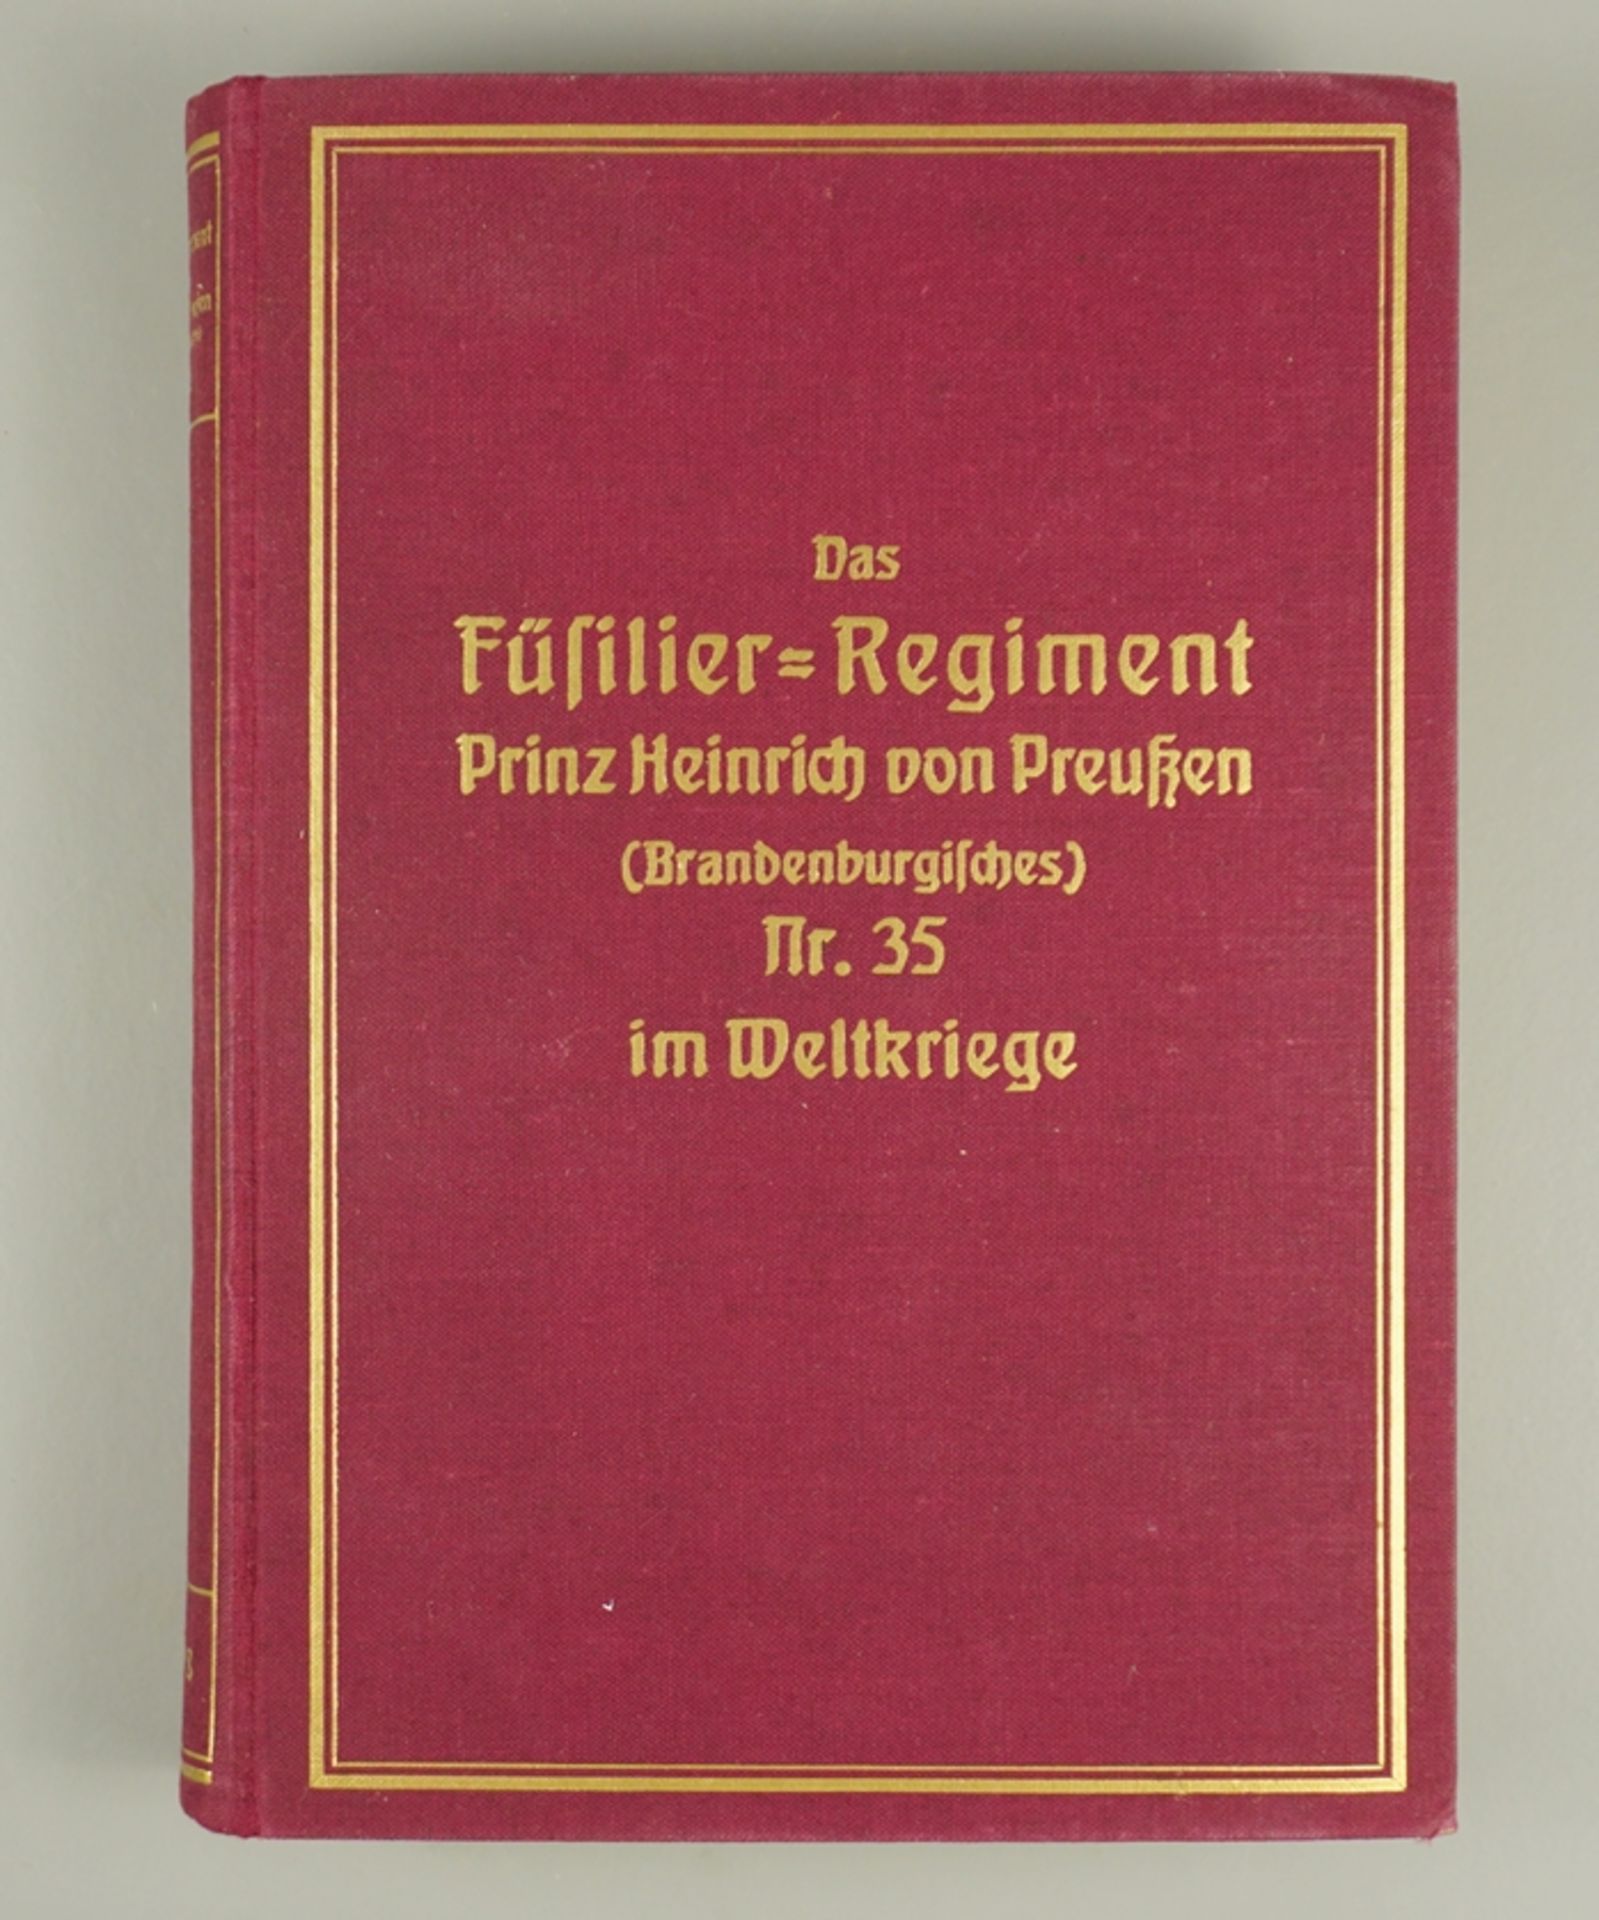 Buch "Das Füsilier-Rgt. Prinz Heinrich von Preußen (Brandenburgisches) Nr.35 im Weltkriege"